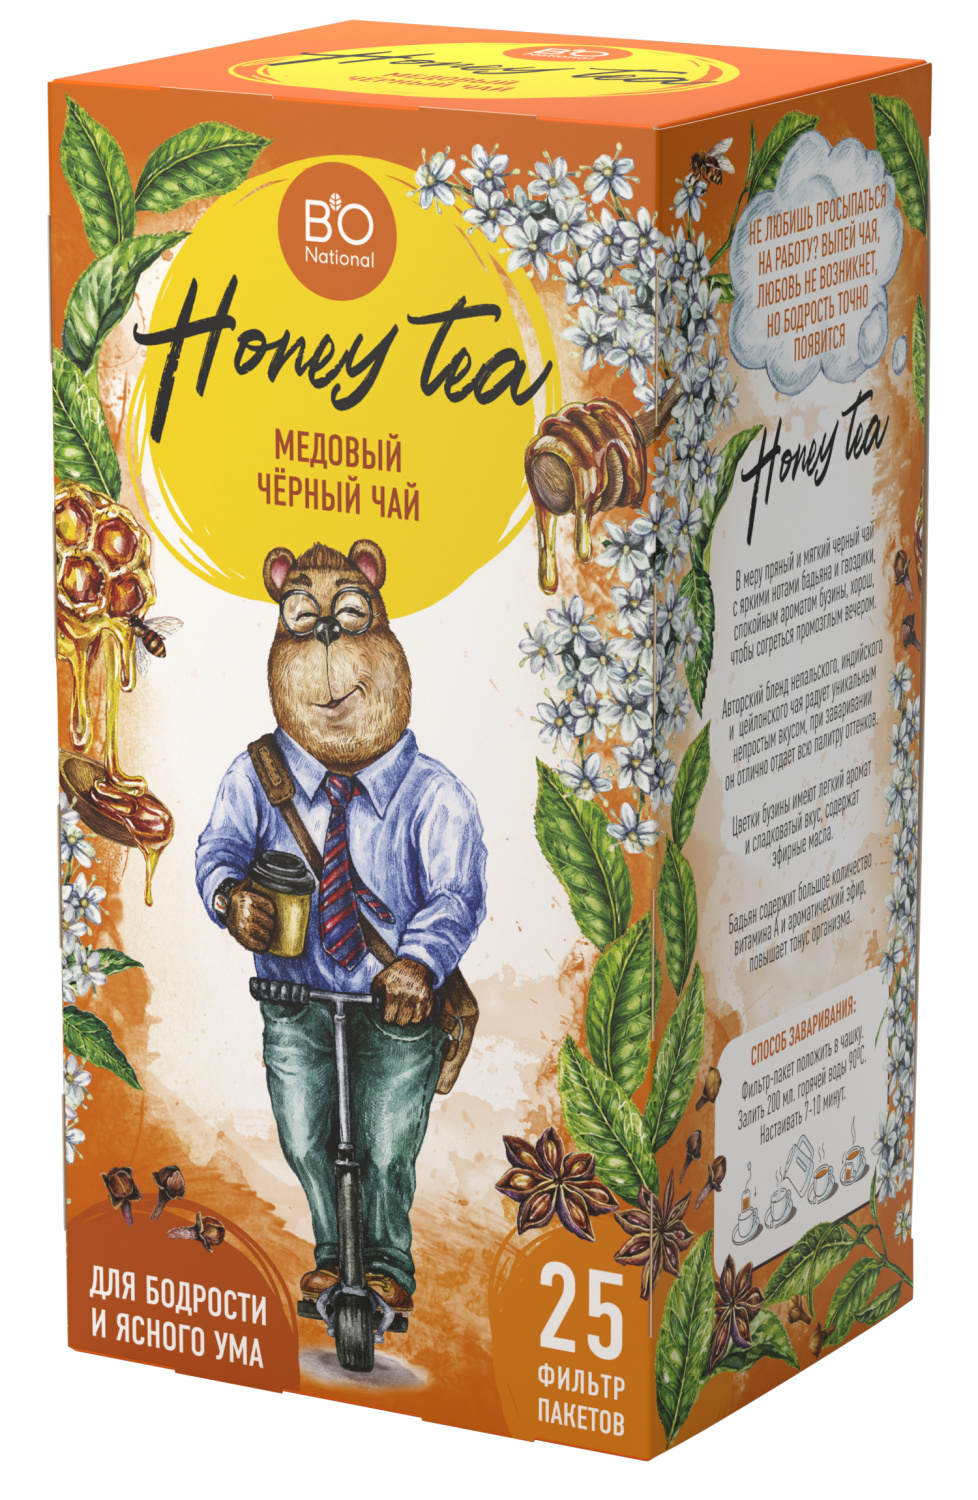 BioNational Чай Медовый черный цветы бузины, бадьян, гвоздика, мед 25 фильтр-пакетов